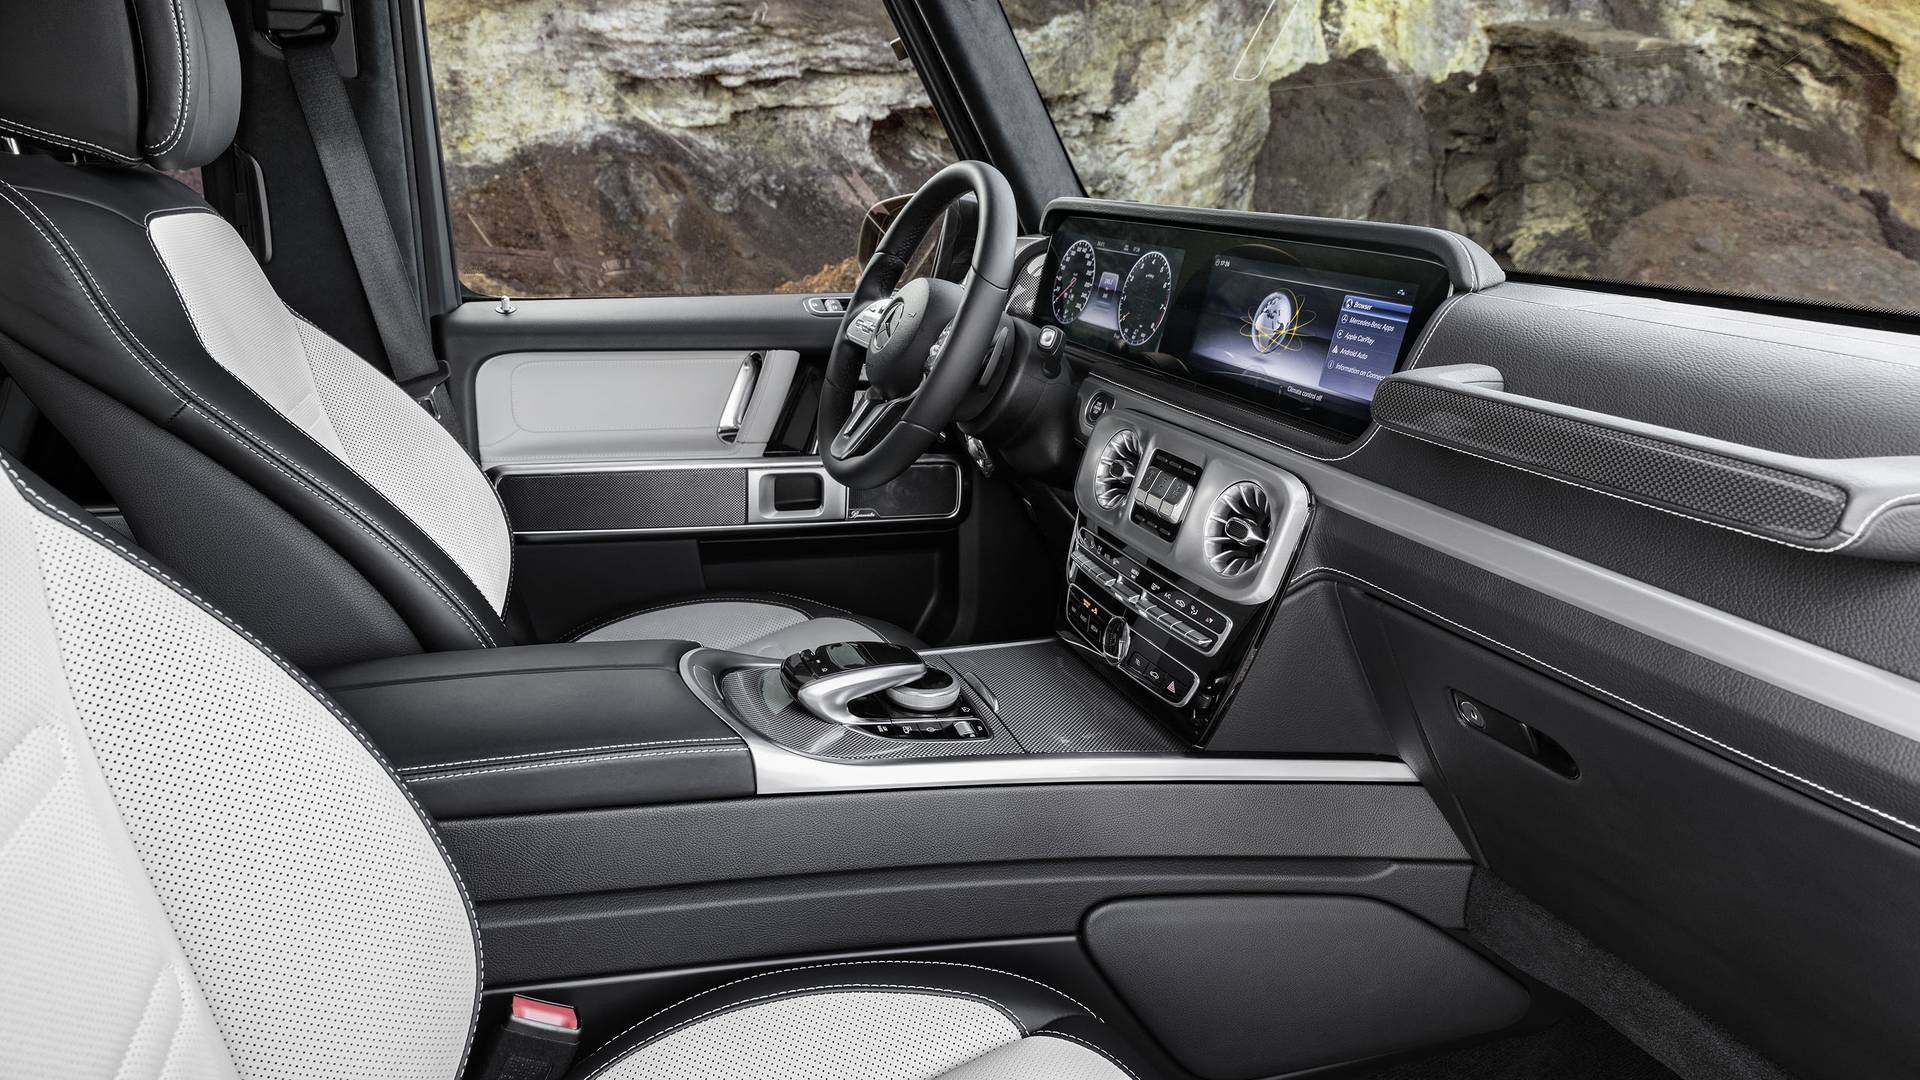 Название: 2019-mercedes-benz-g-class-interior.jpg
Просмотров: 1125

Размер: 362.8 Кб